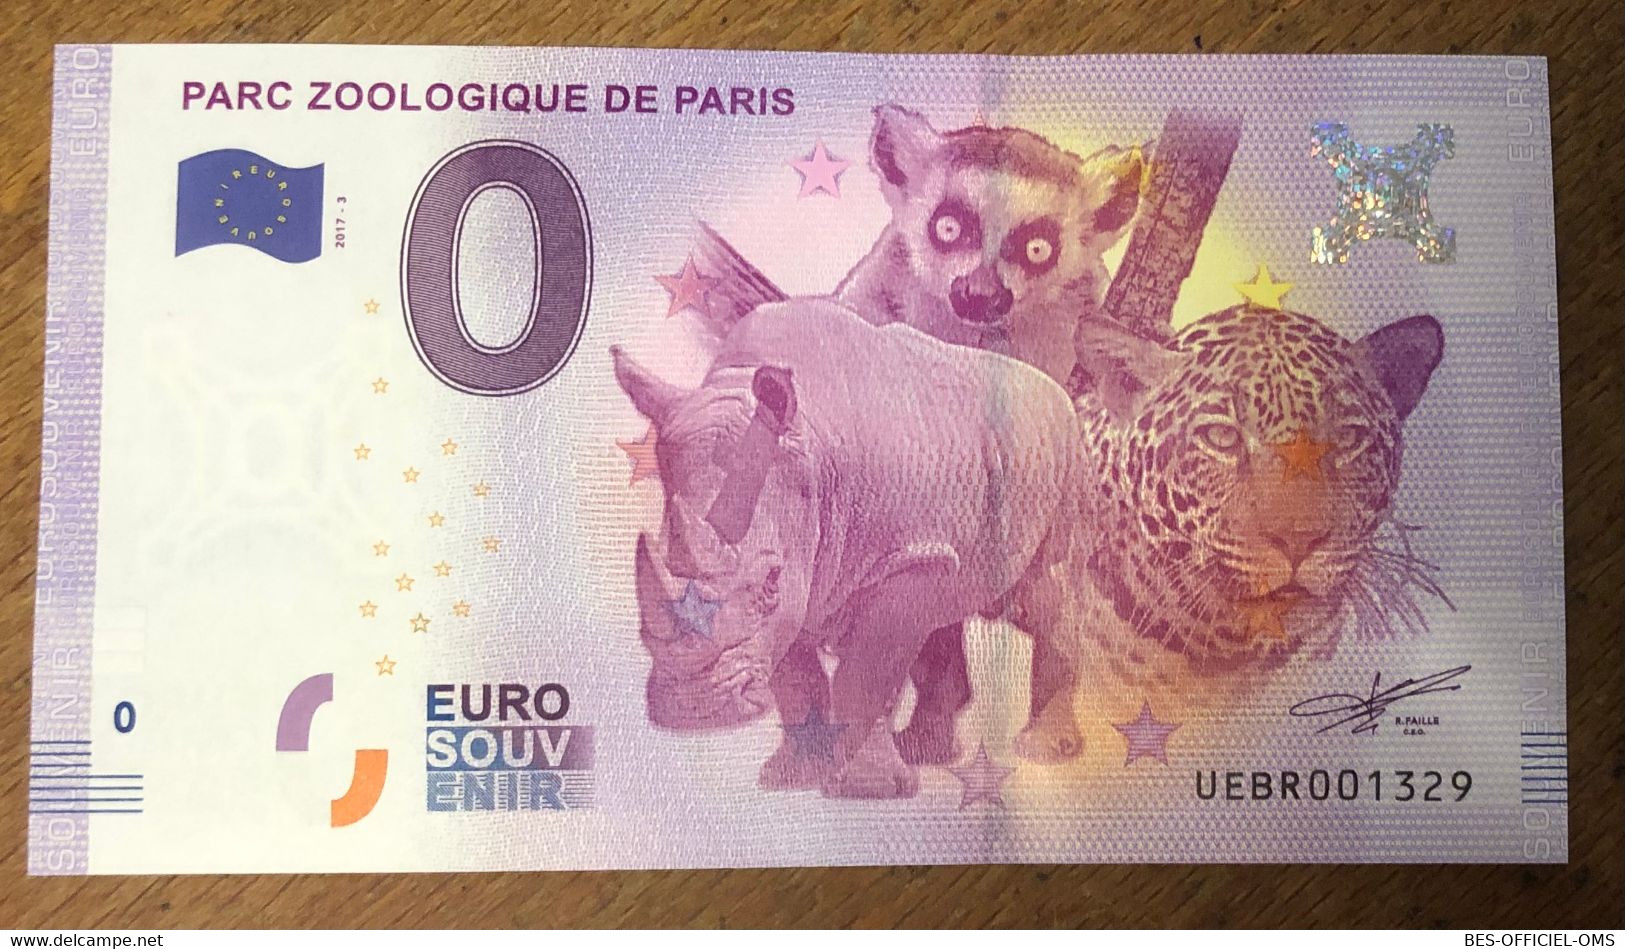 2017 BILLET 0 EURO SOUVENIR DPT 75 PARC ZOOLOGIQUE DE PARIS N°3 ZERO 0 EURO SCHEIN BANKNOTE PAPER MONEY BANK - Private Proofs / Unofficial